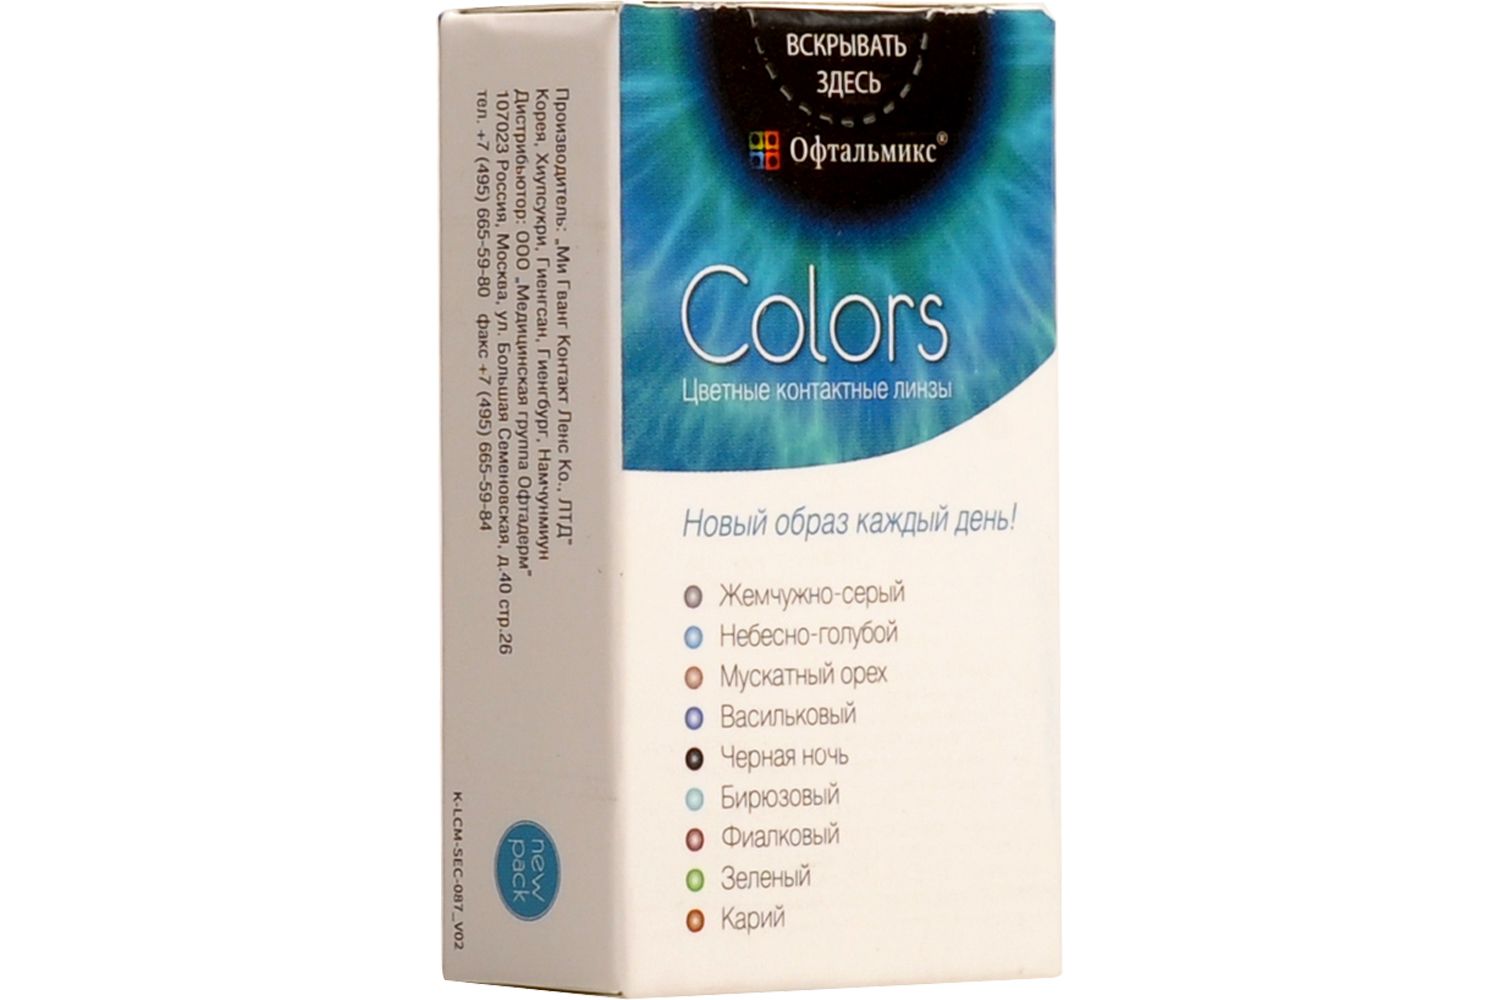 Купить Colors 2 линзы, Цветные контактные линзы Офтальмикс Colors, 2 шт. PWR -1, 50, R 8.6, Olive